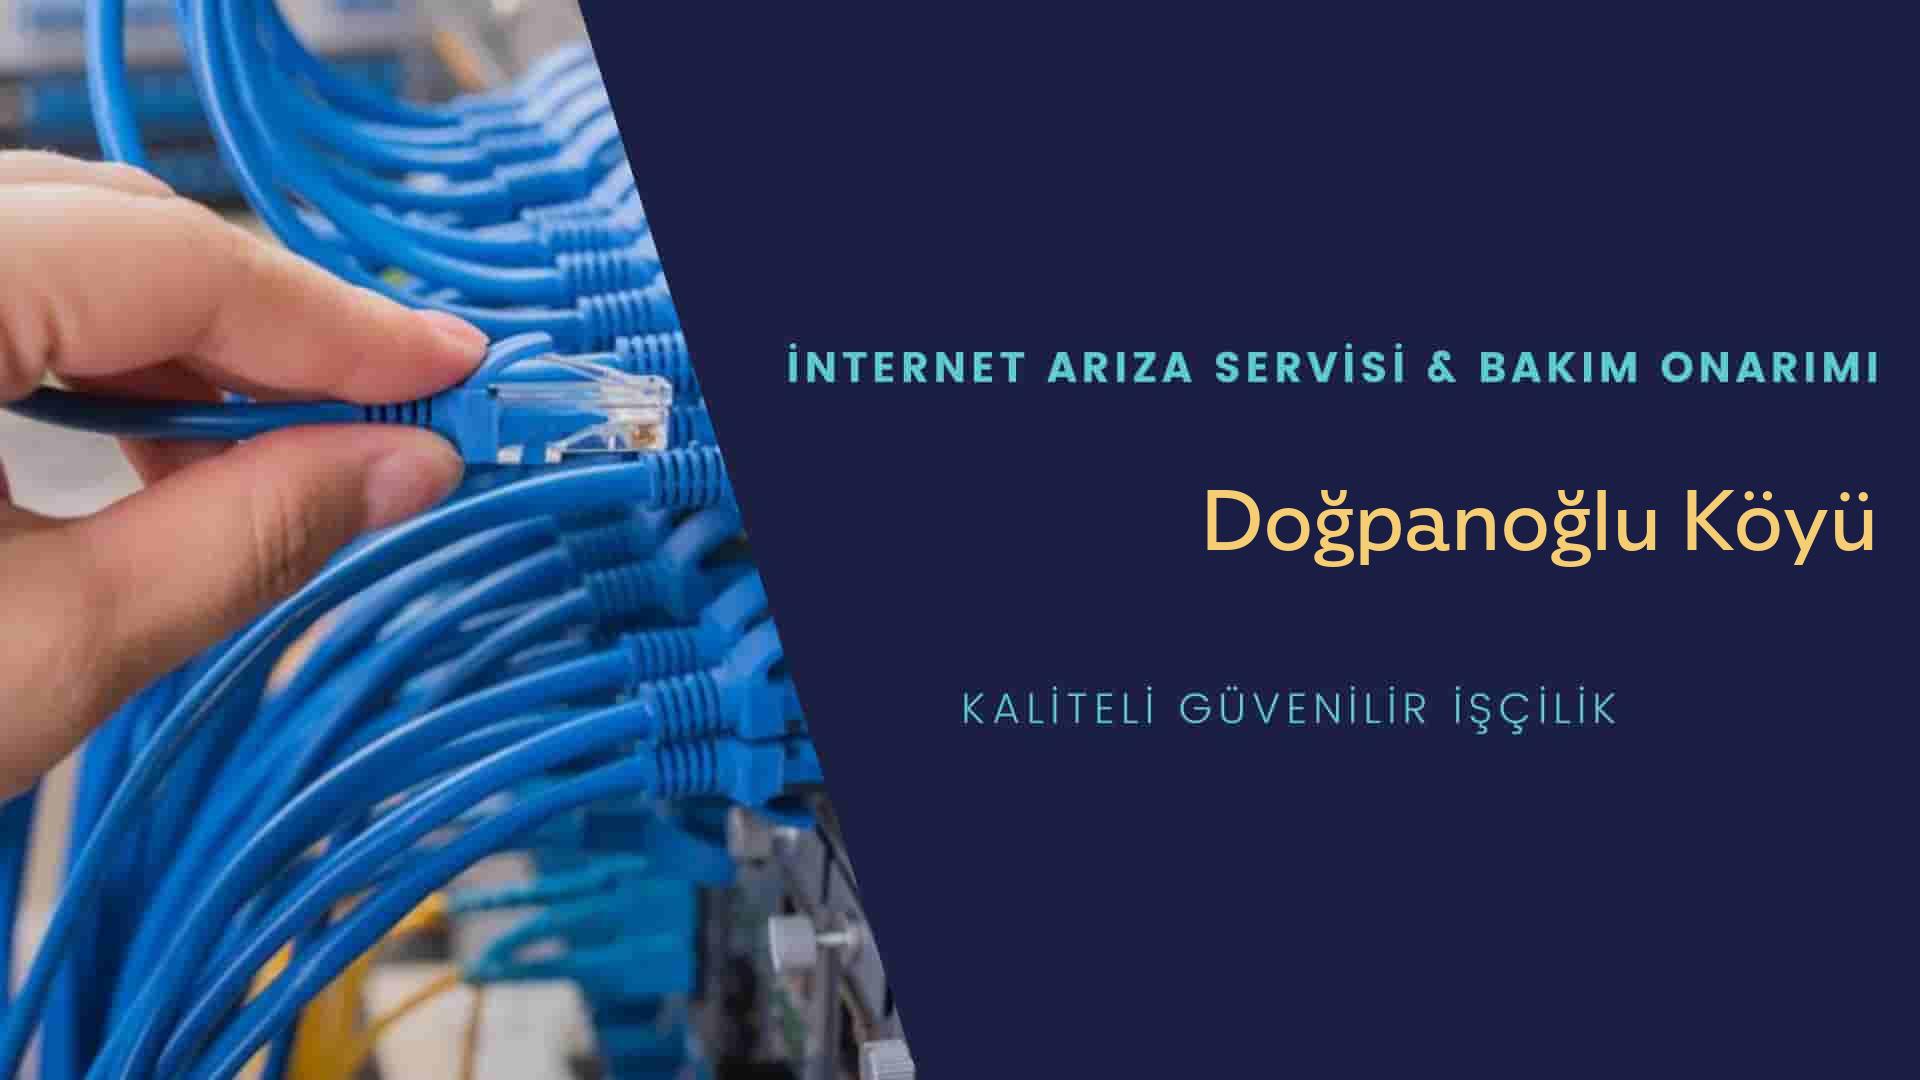 Doğpanoğlu Köyü internet kablosu çekimi yapan yerler veya elektrikçiler mi? arıyorsunuz doğru yerdesiniz o zaman sizlere 7/24 yardımcı olacak profesyonel ustalarımız bir telefon kadar yakındır size.